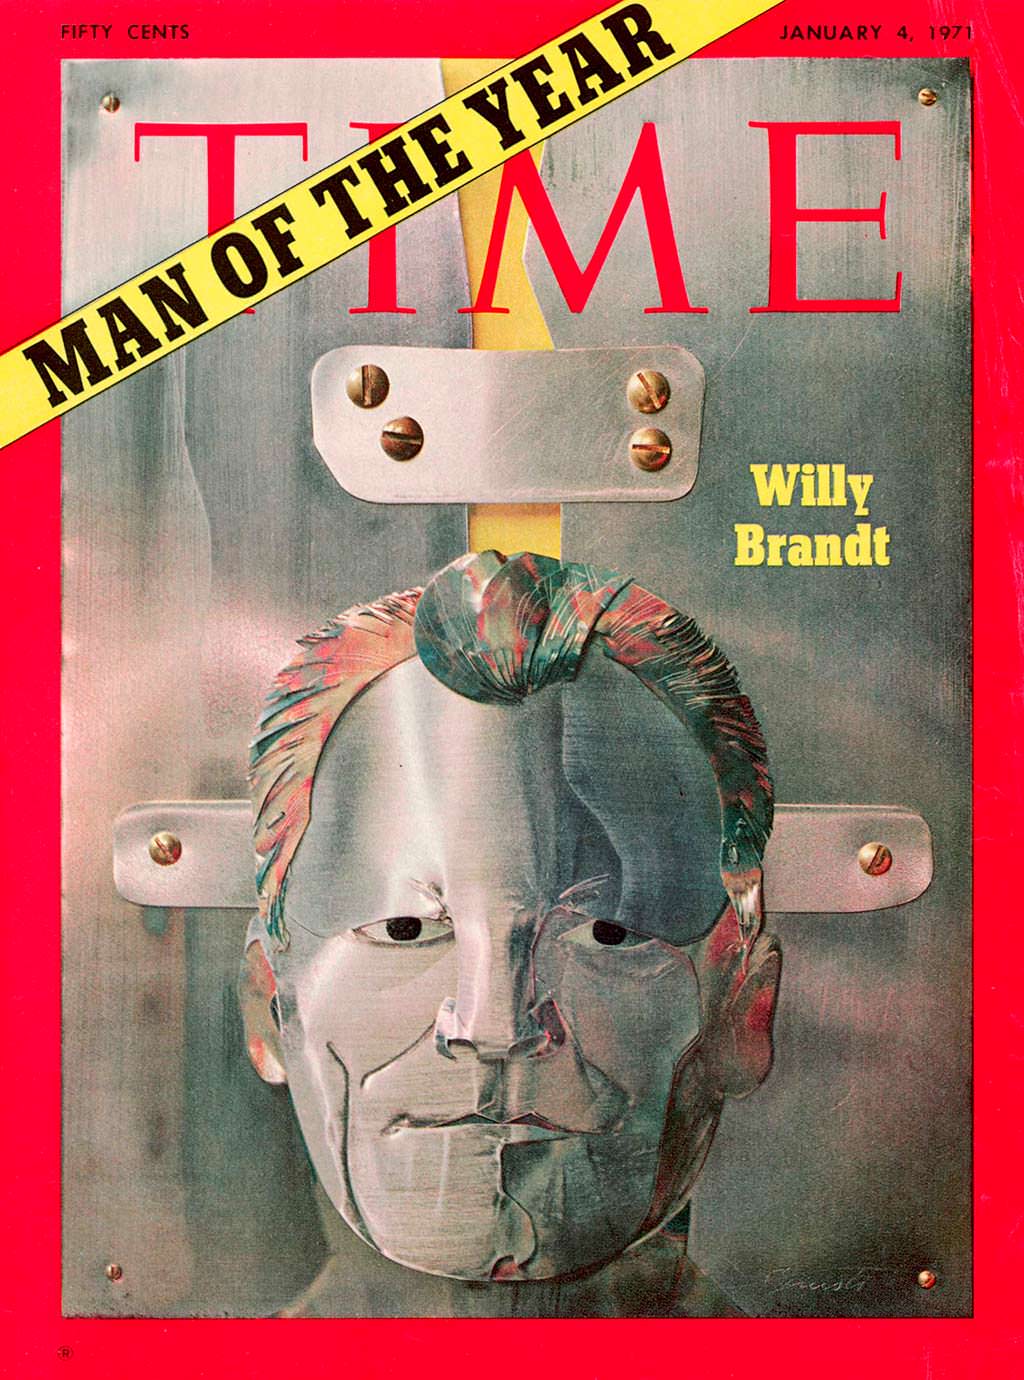 1970 год. Канцлер ФРГ Вилли Брандт на обложке Time